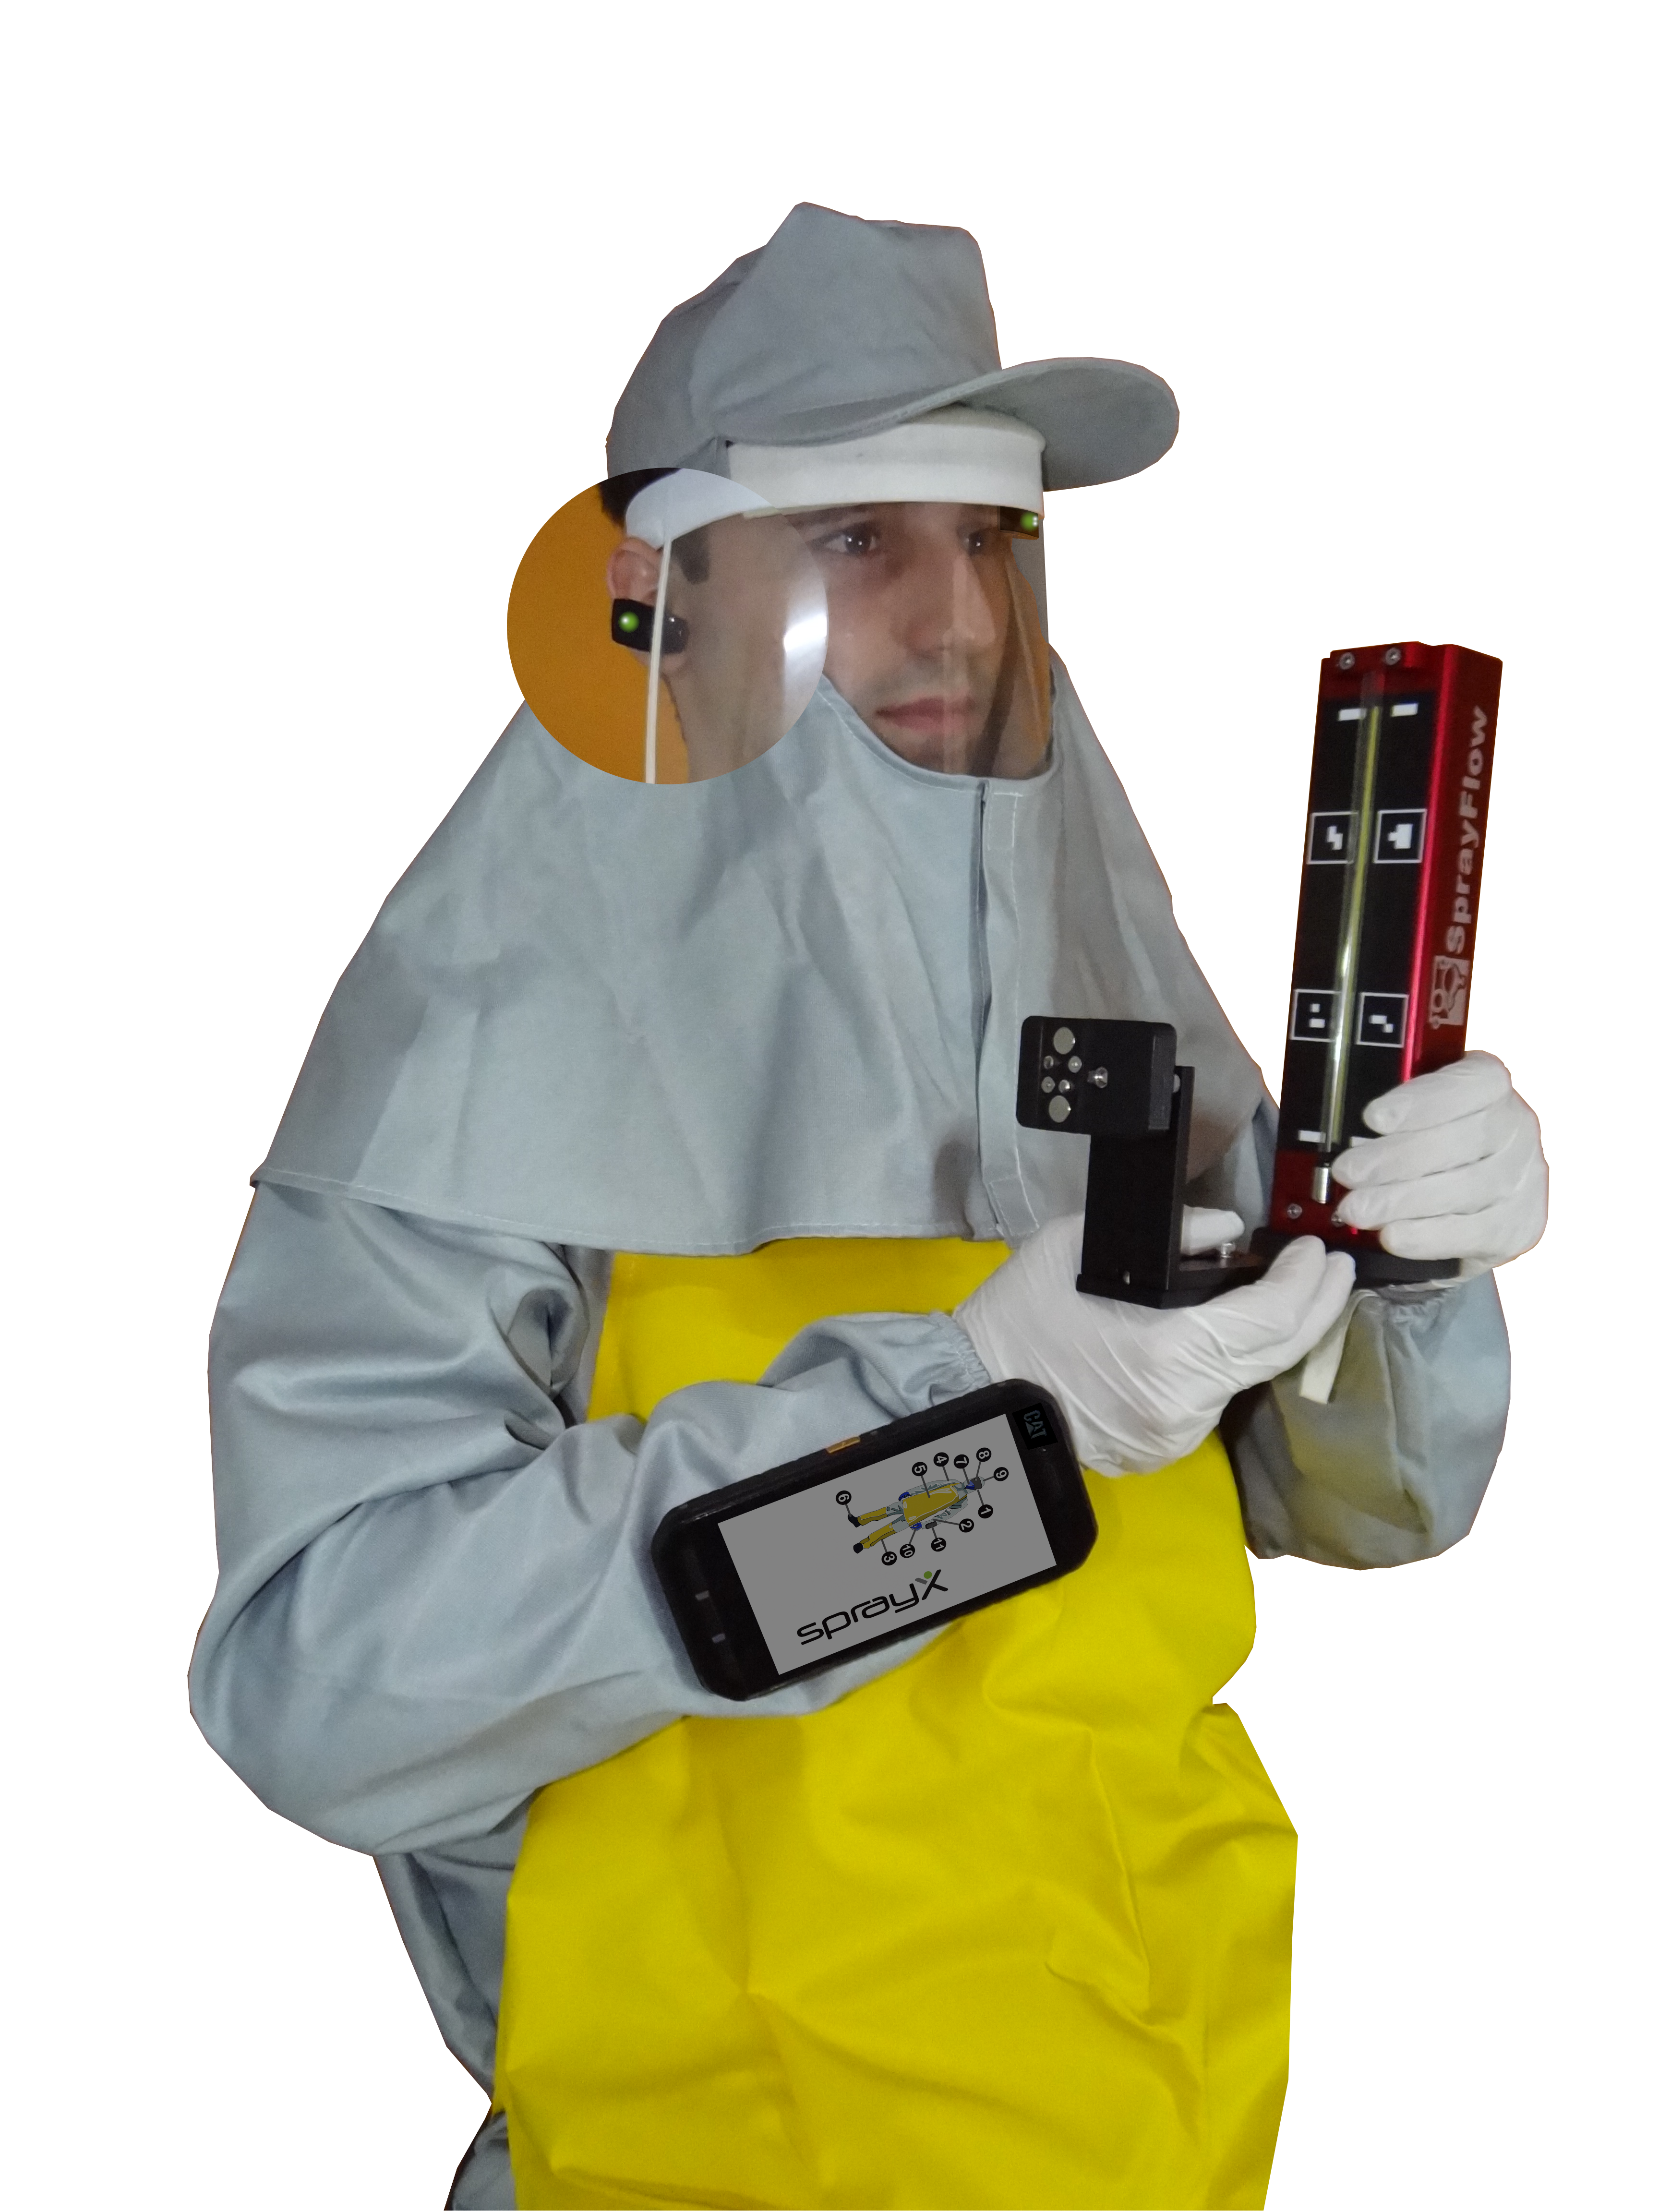 A SprayX busca tornar a aplicação de defensivos mais eficiente e segura